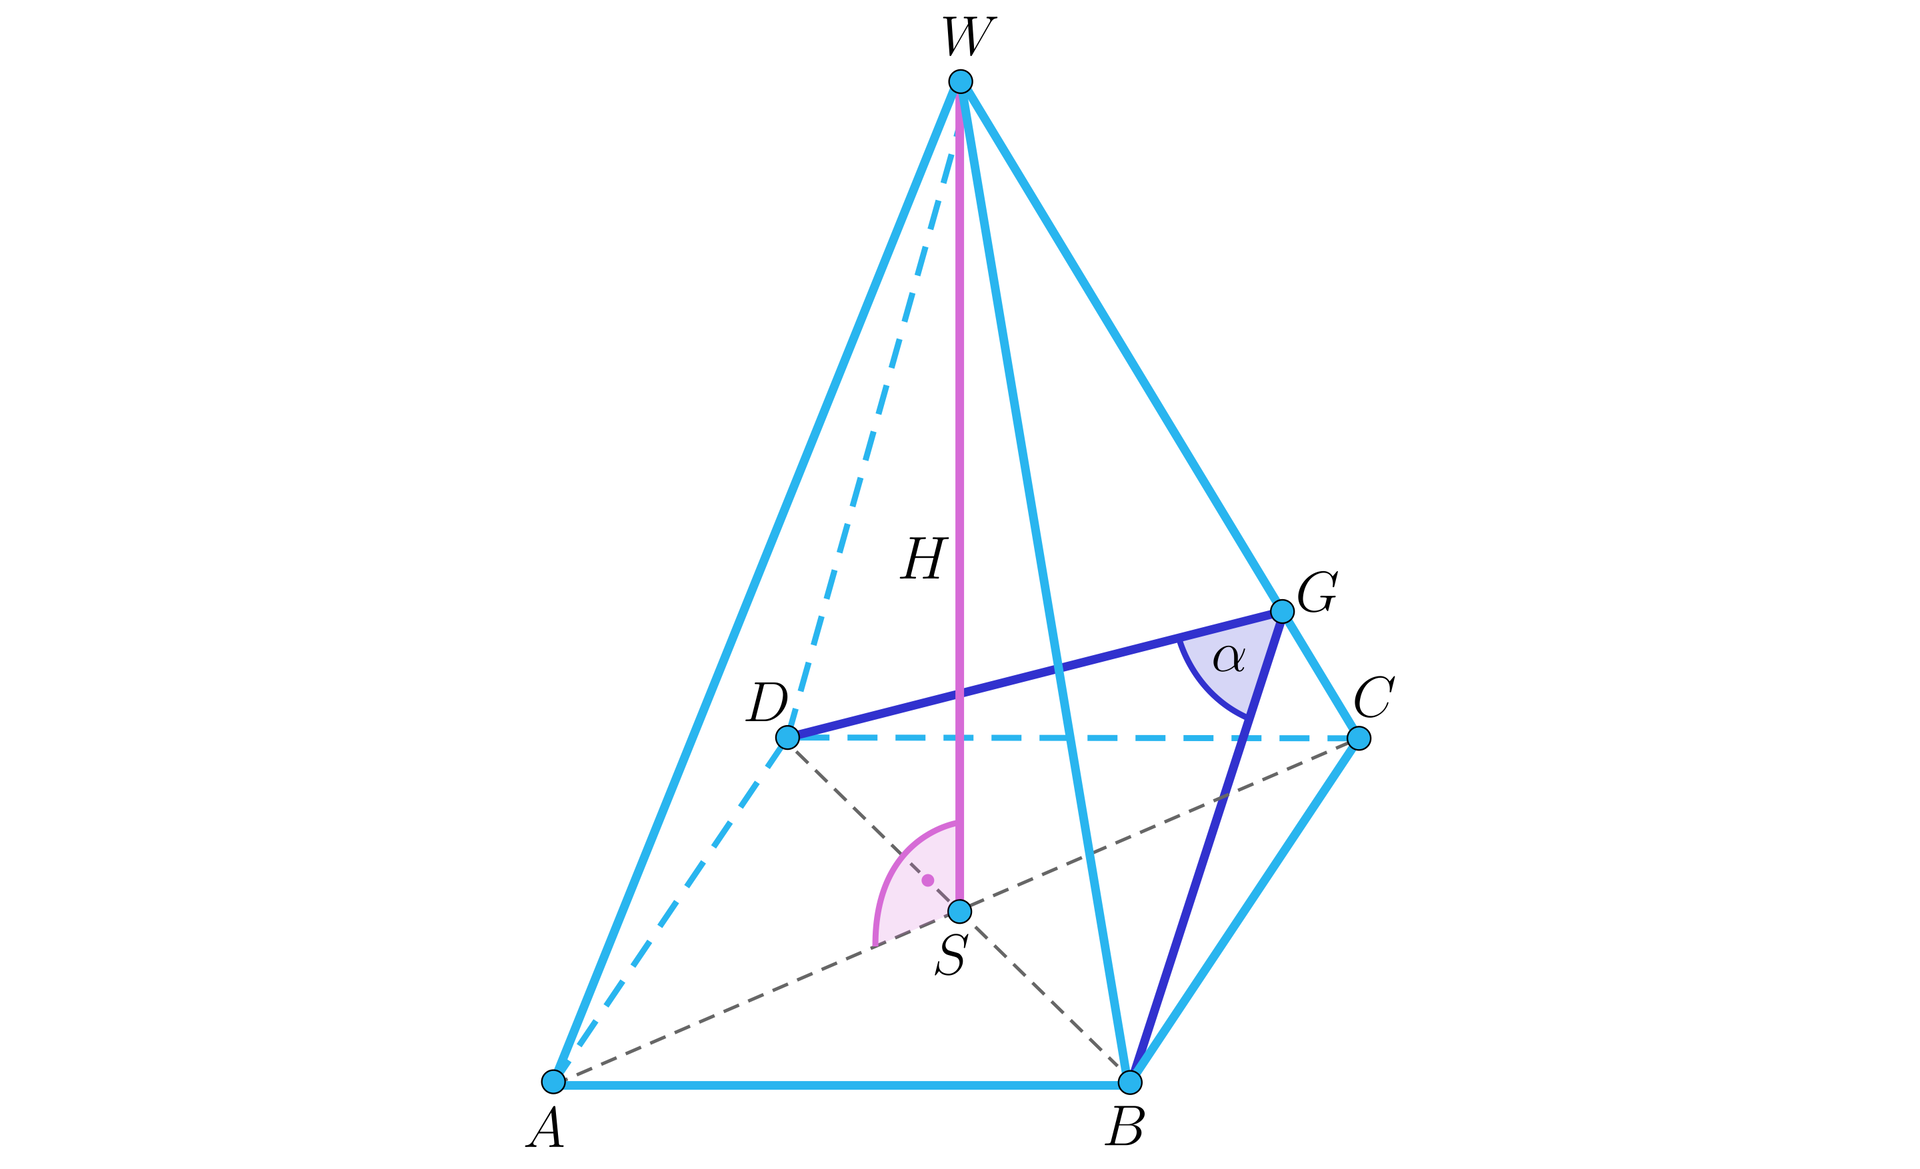 Ilustracja przedstawia ostrosłup prawidłowy czworokątny A B C D W. Z wierzchołka W upuszczono wysokość bryły na środek przekątnej D B w punkcie S. Z wierzchołka B i D upuszczono wysokość dwóch sąsiednich ścian bocznych. Obie wysokości łączą się w punkcie G na odcinku W C. Powstał trójkąt równoramienny B G D z zaznaczonym kątem alfa pomiędzy odcinkiem B G i D G.